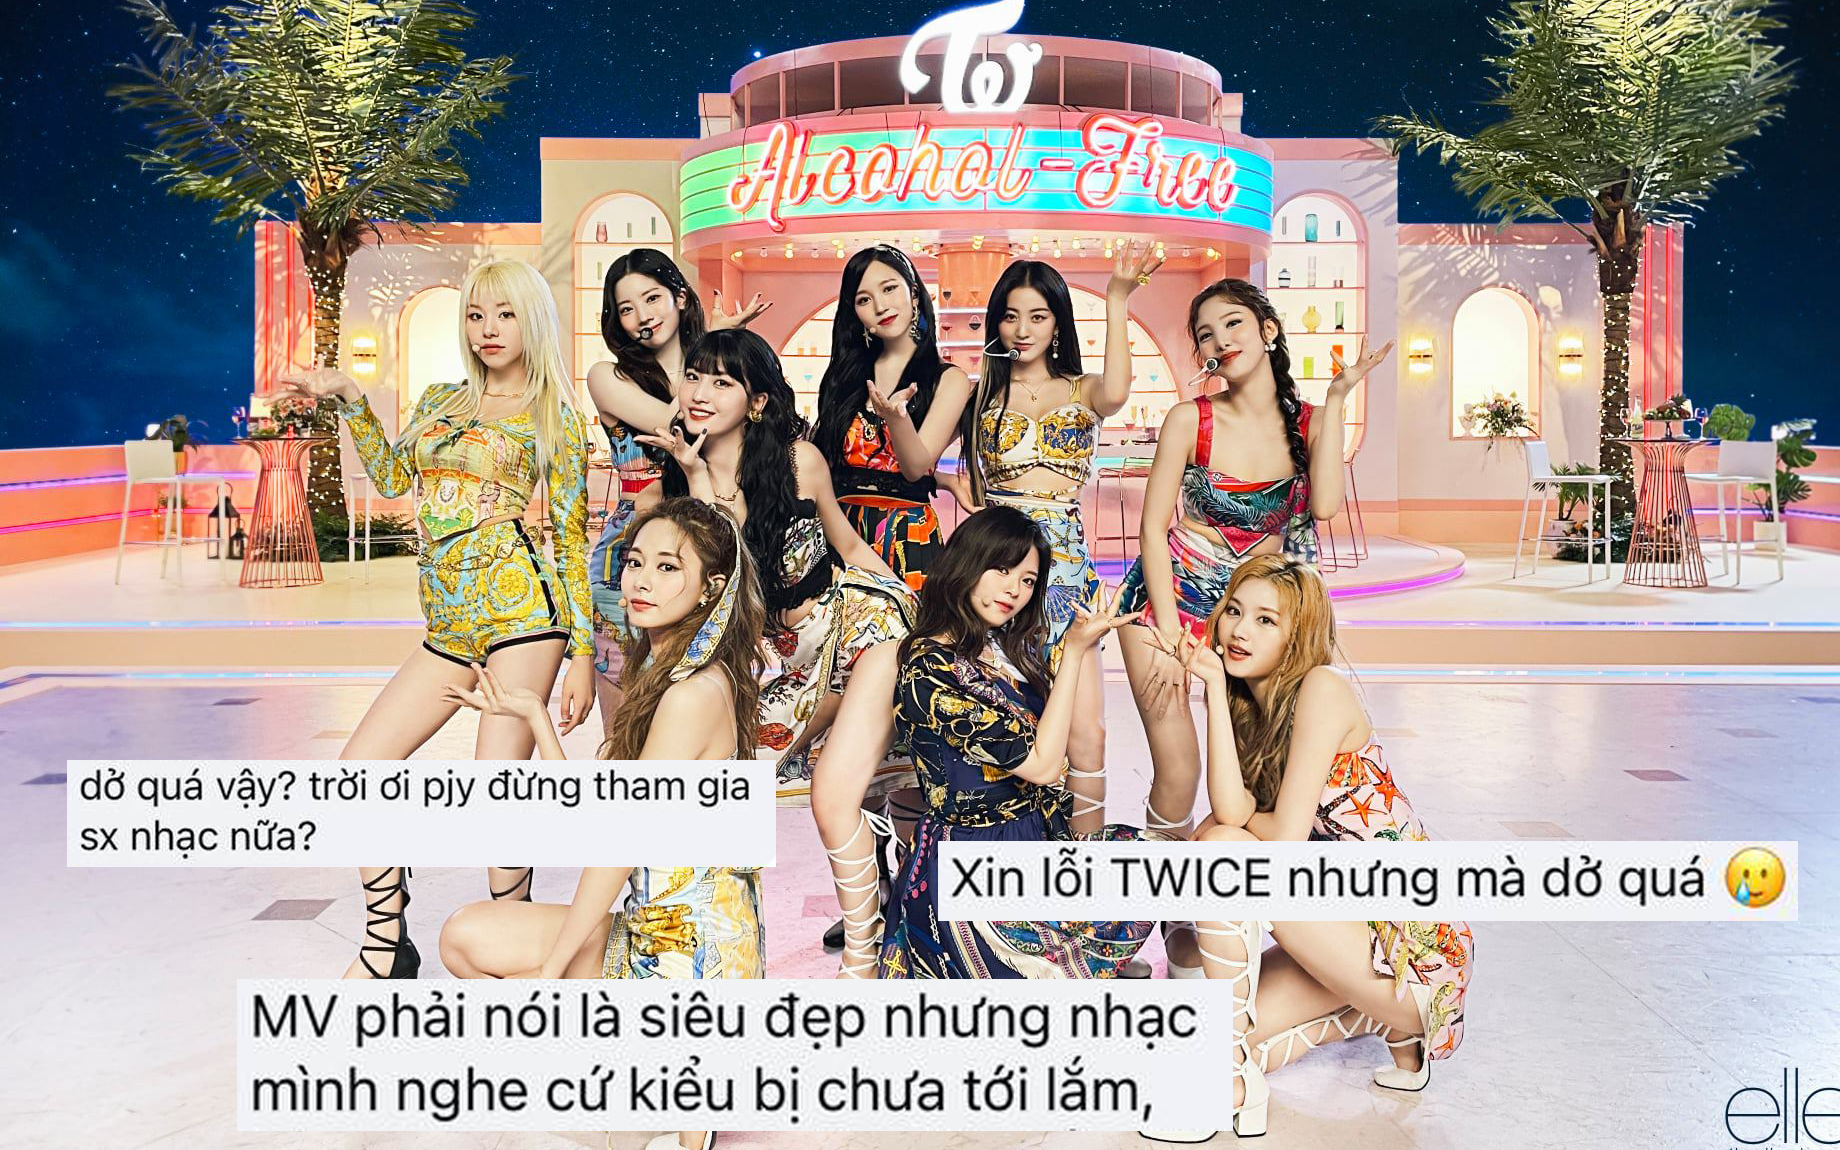 Tranh cãi MV comeback của TWICE: Vnet chê ngang phè, Knet lại khen nhạc chill?